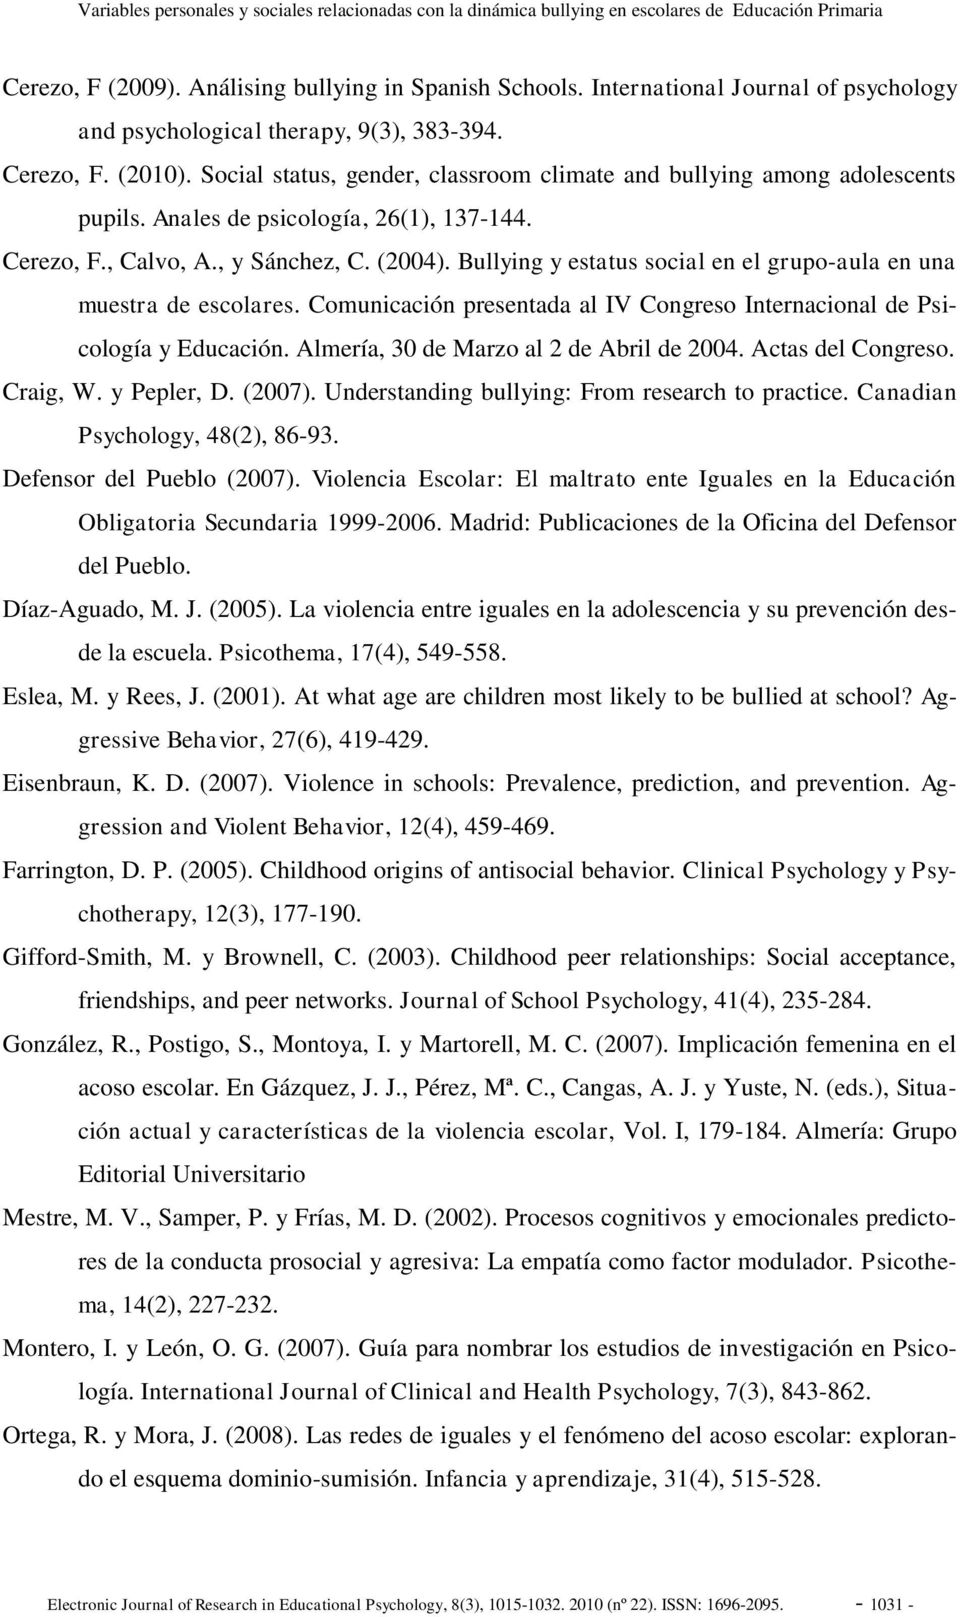 Anales de psicología, 26(1), 137-144. Cerezo, F., Calvo, A., y Sánchez, C. (2004). Bullying y estatus social en el grupo-aula en una muestra de escolares.